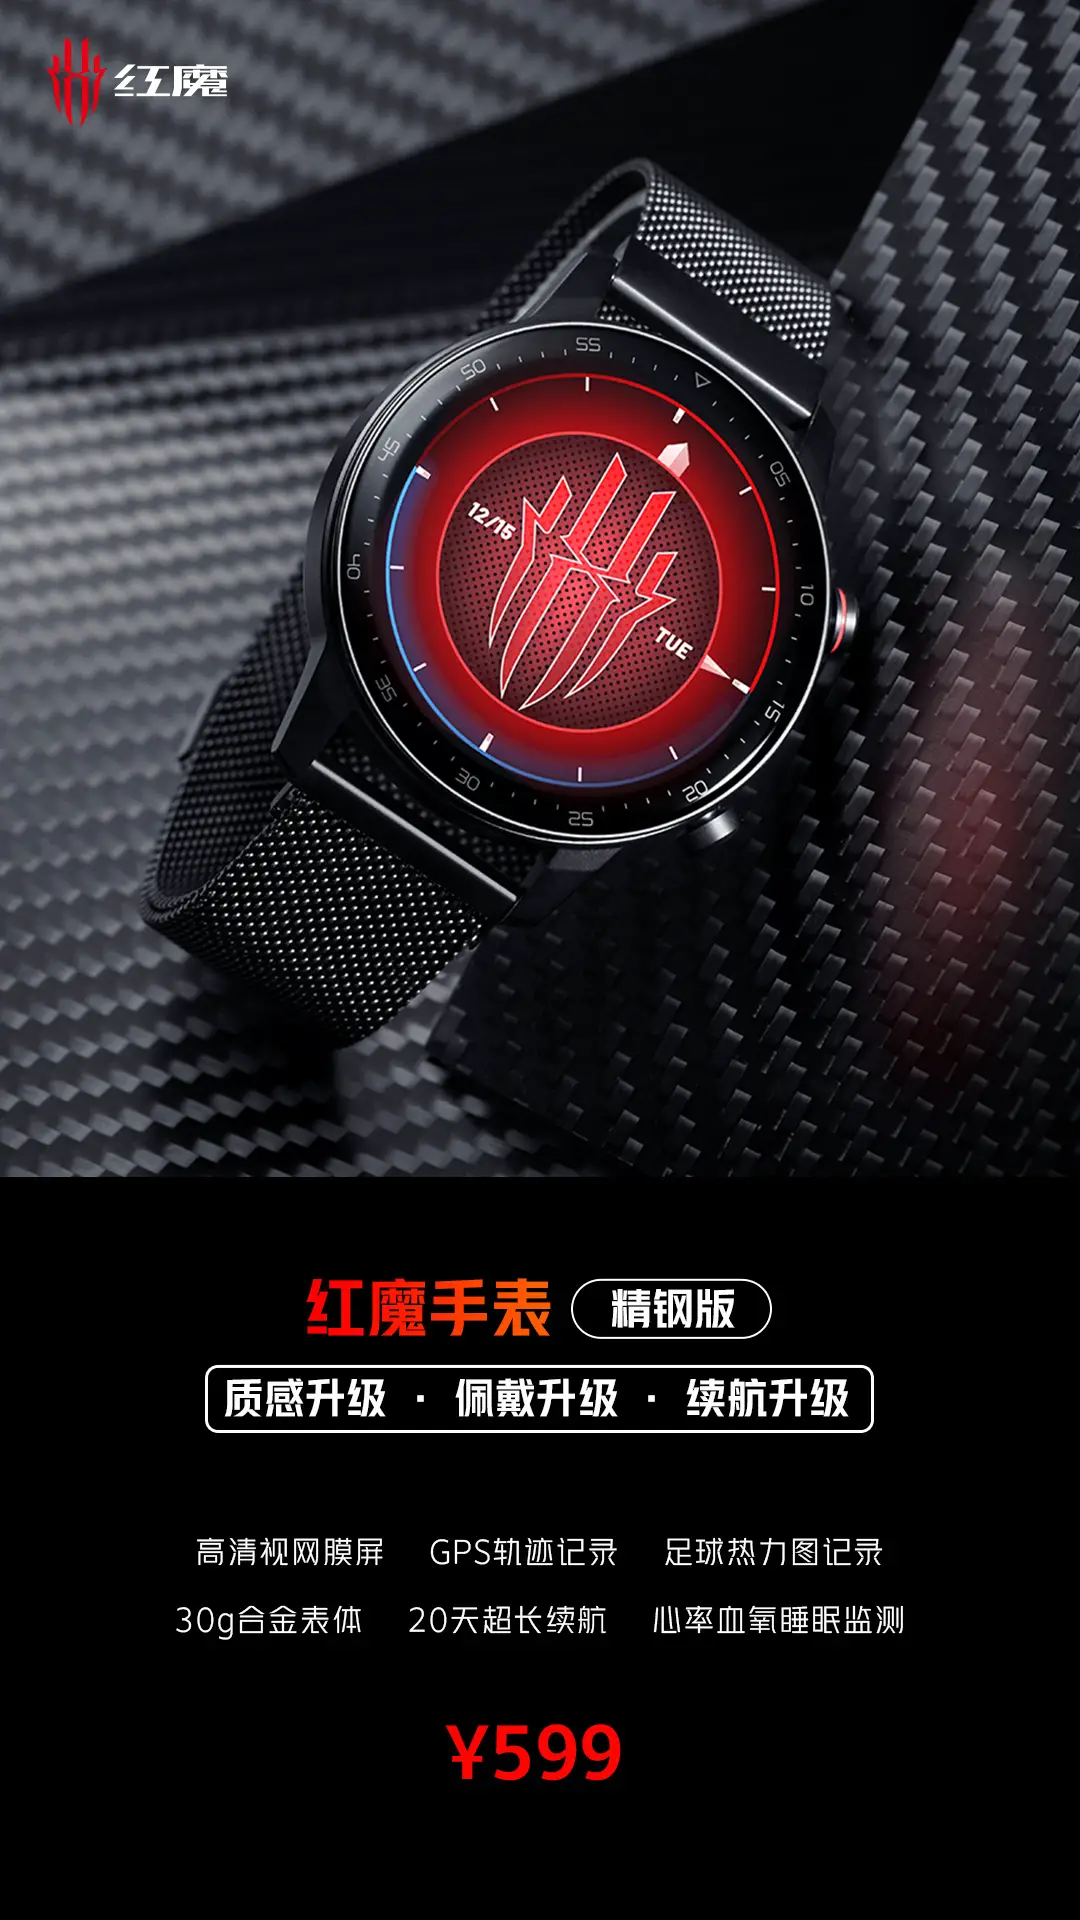 RedMagic Watch Stainless Steel Edition presentato: adesso con cinturino in acciaio e maggiore autonomia